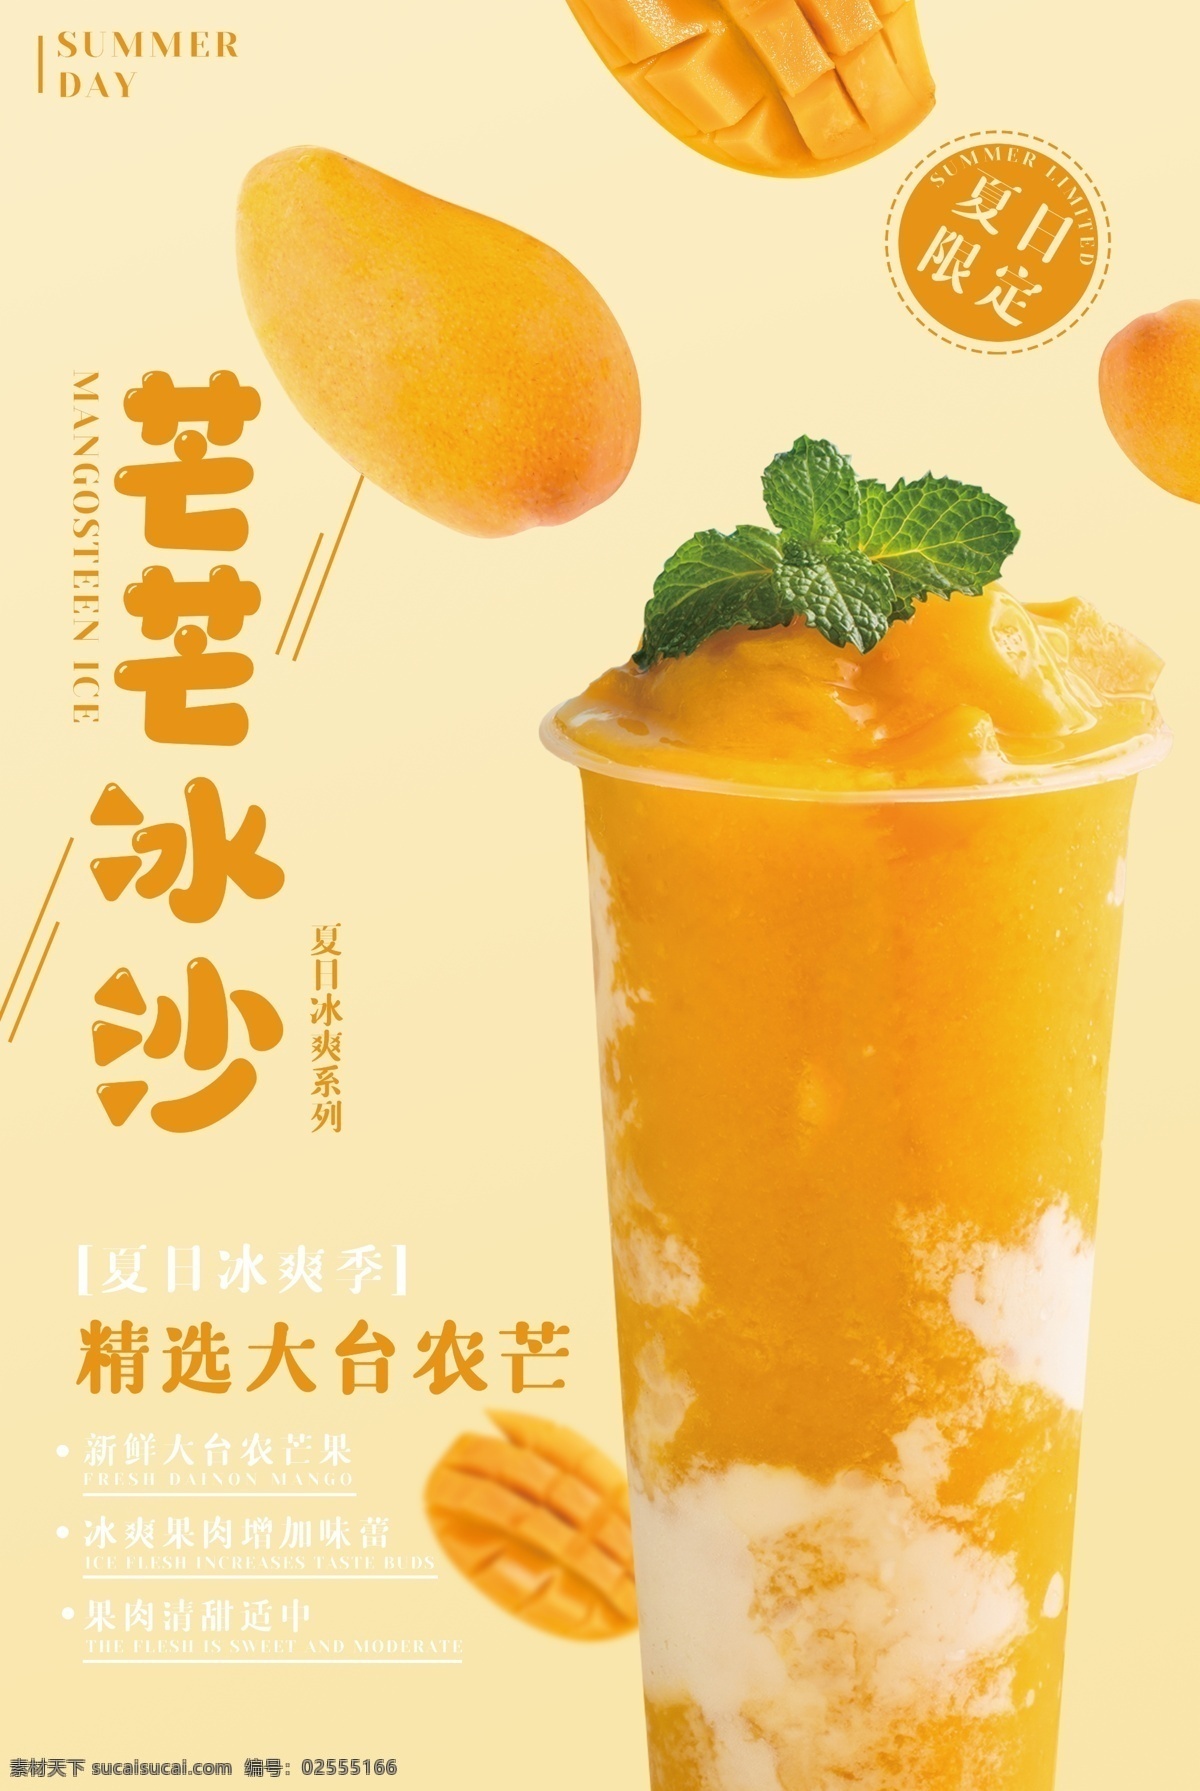 芒果 冰 沙 活动 促销 宣传海报 冰沙 宣传 海报 饮料 饮品 甜品 类